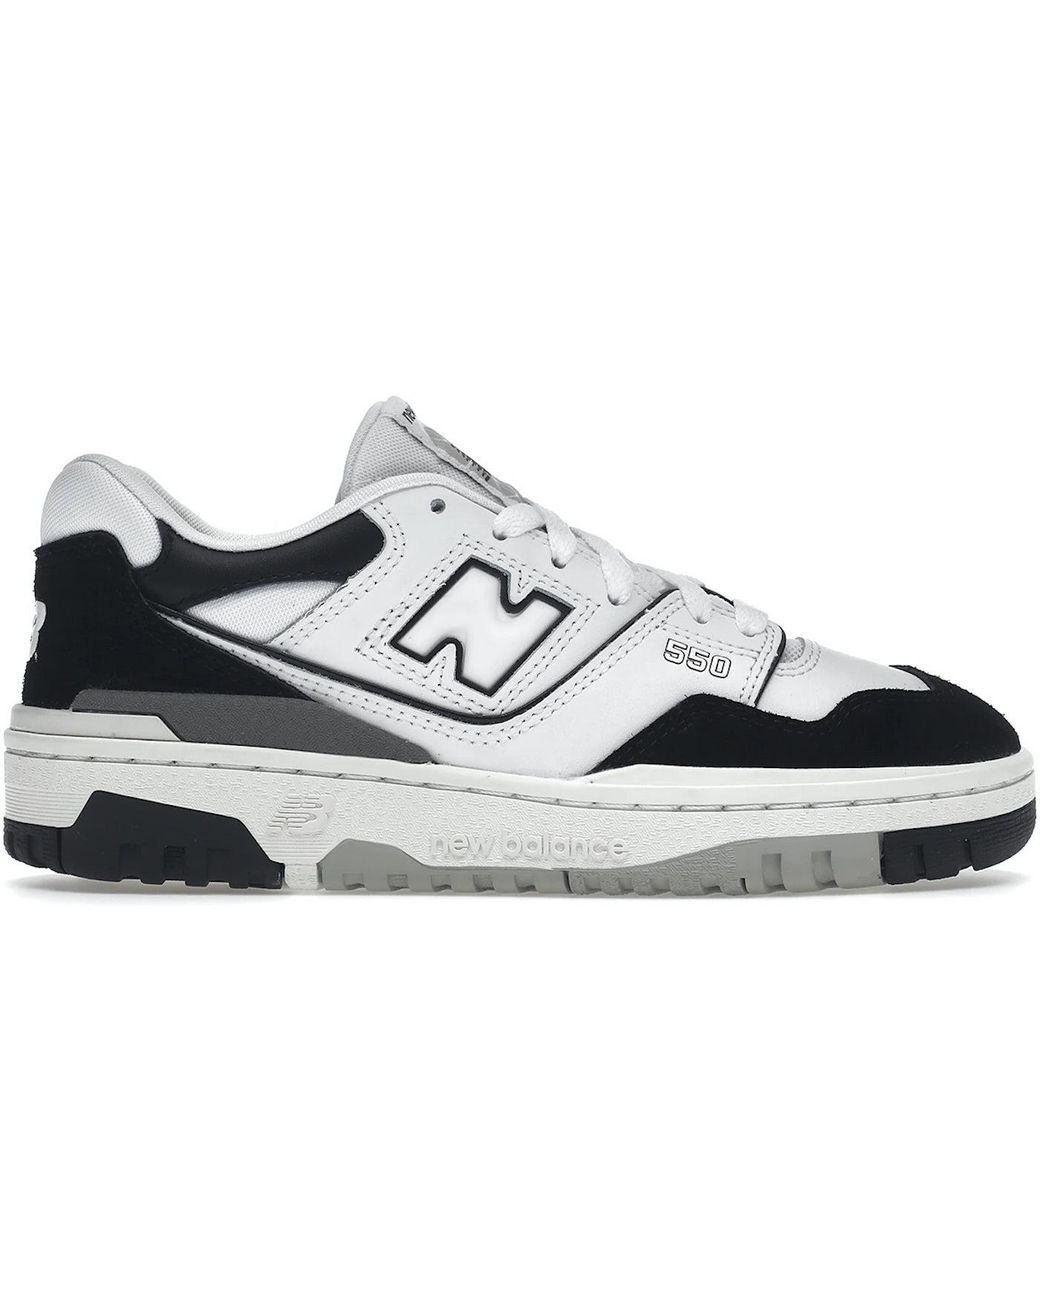 New Balance 550 Black/White Sneakers - Farfetch